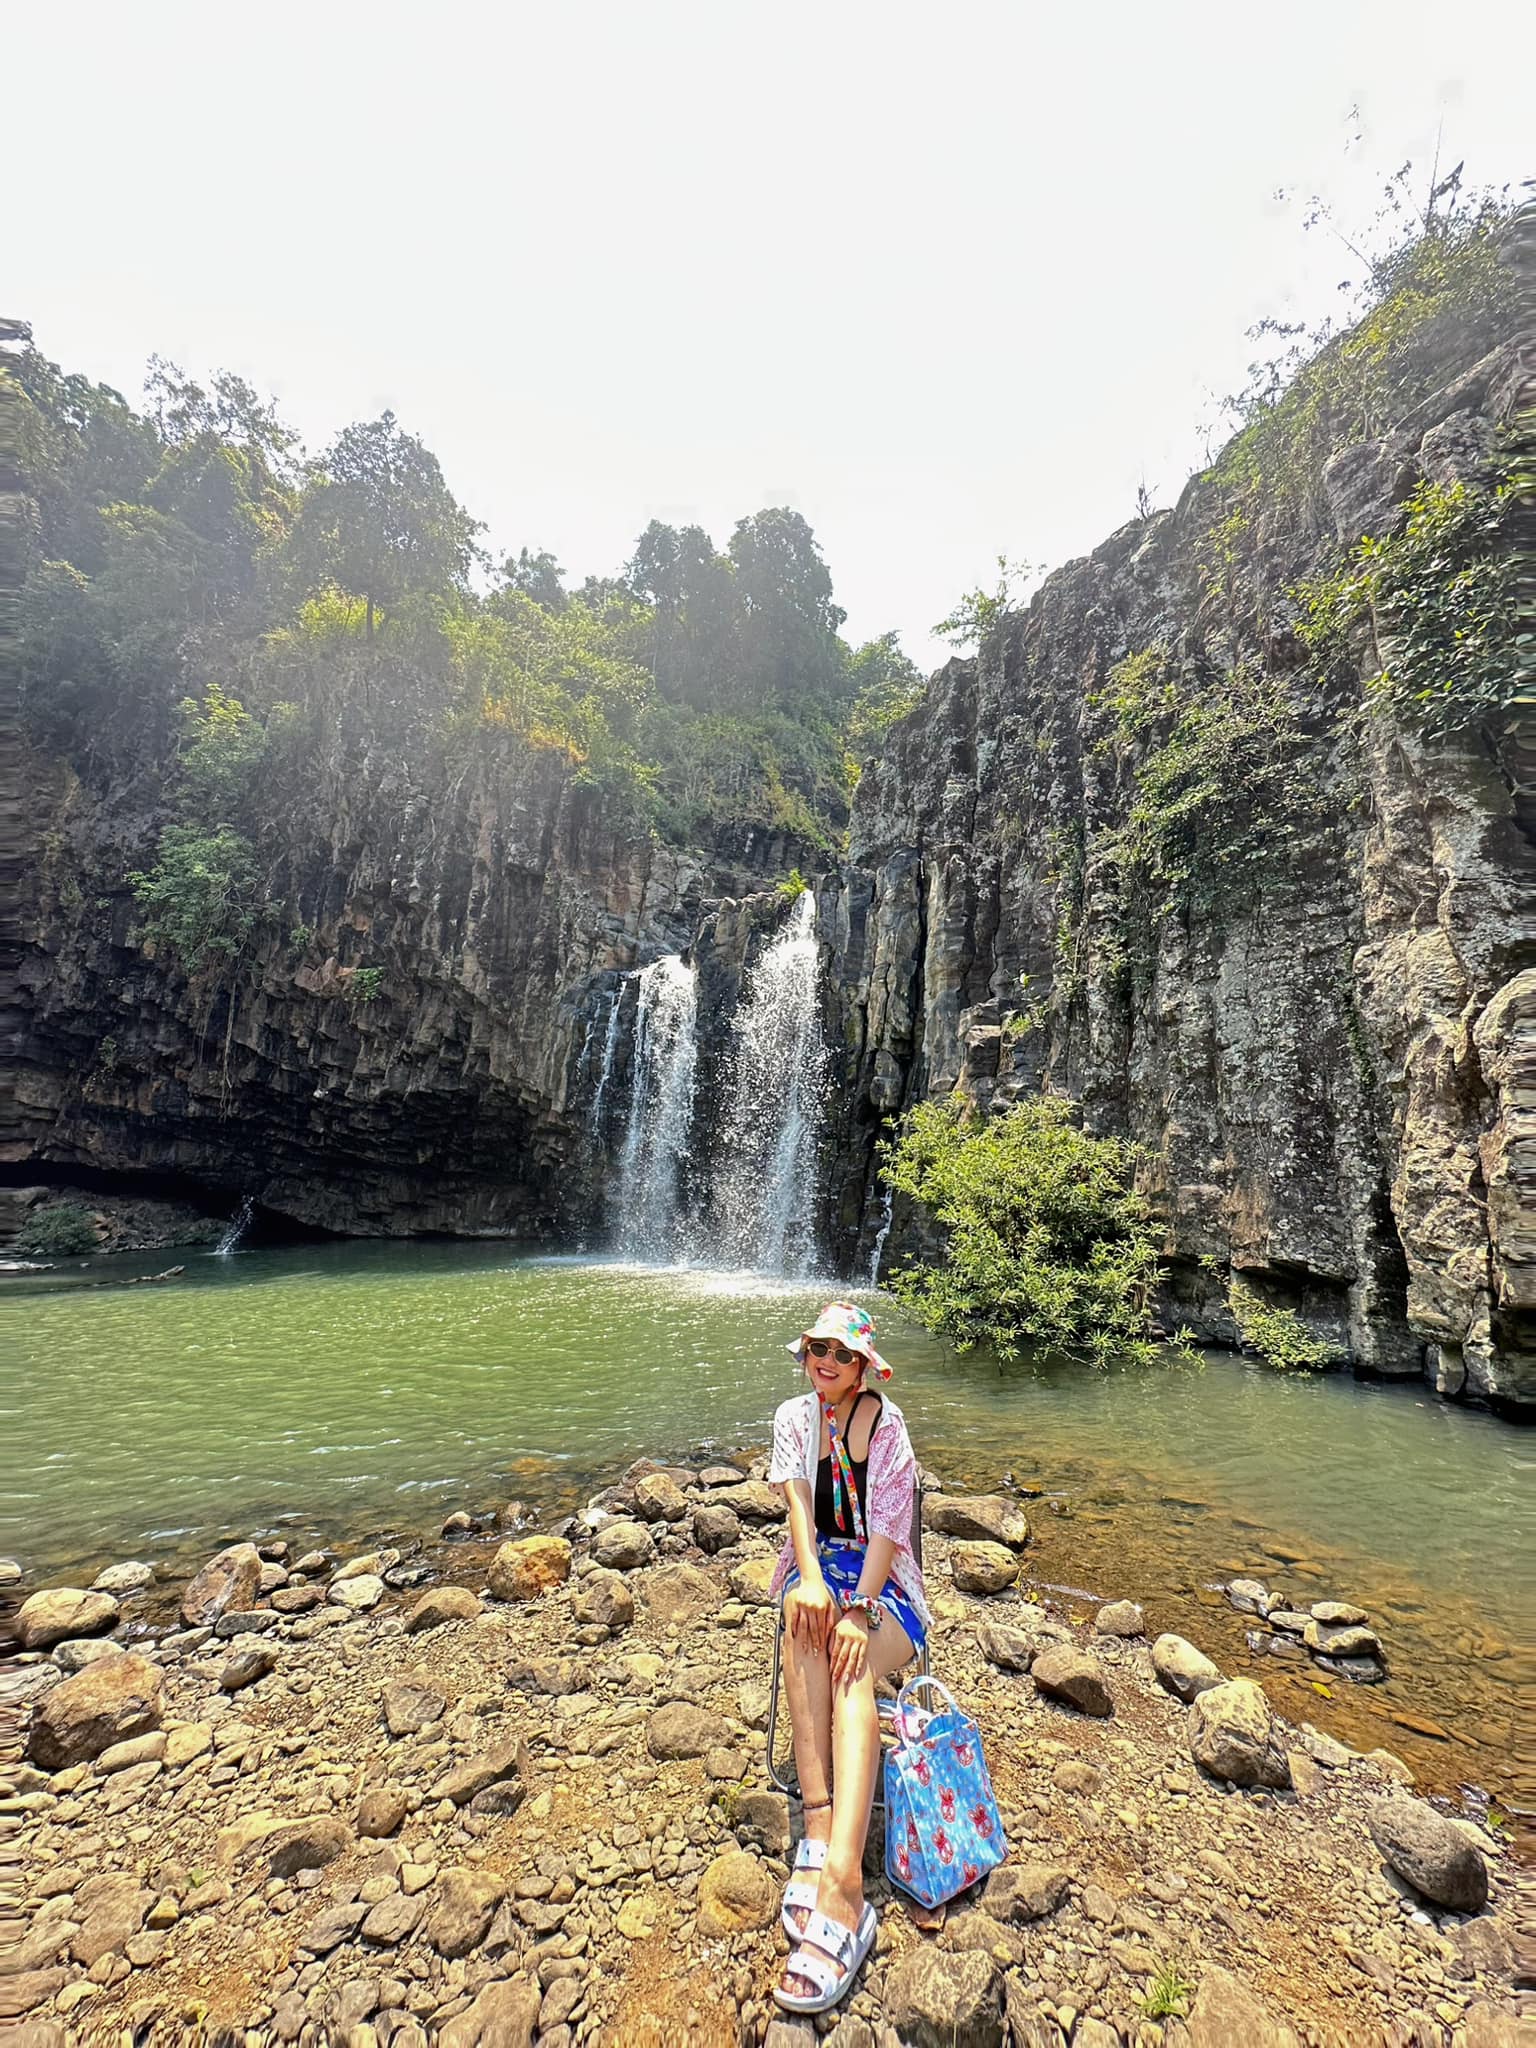 Phát hiện thác nước hùng vĩ như trên phim ở tỉnh miền Trung, rất gần điểm du lịch nổi tiếng mùa hè- Ảnh 10.